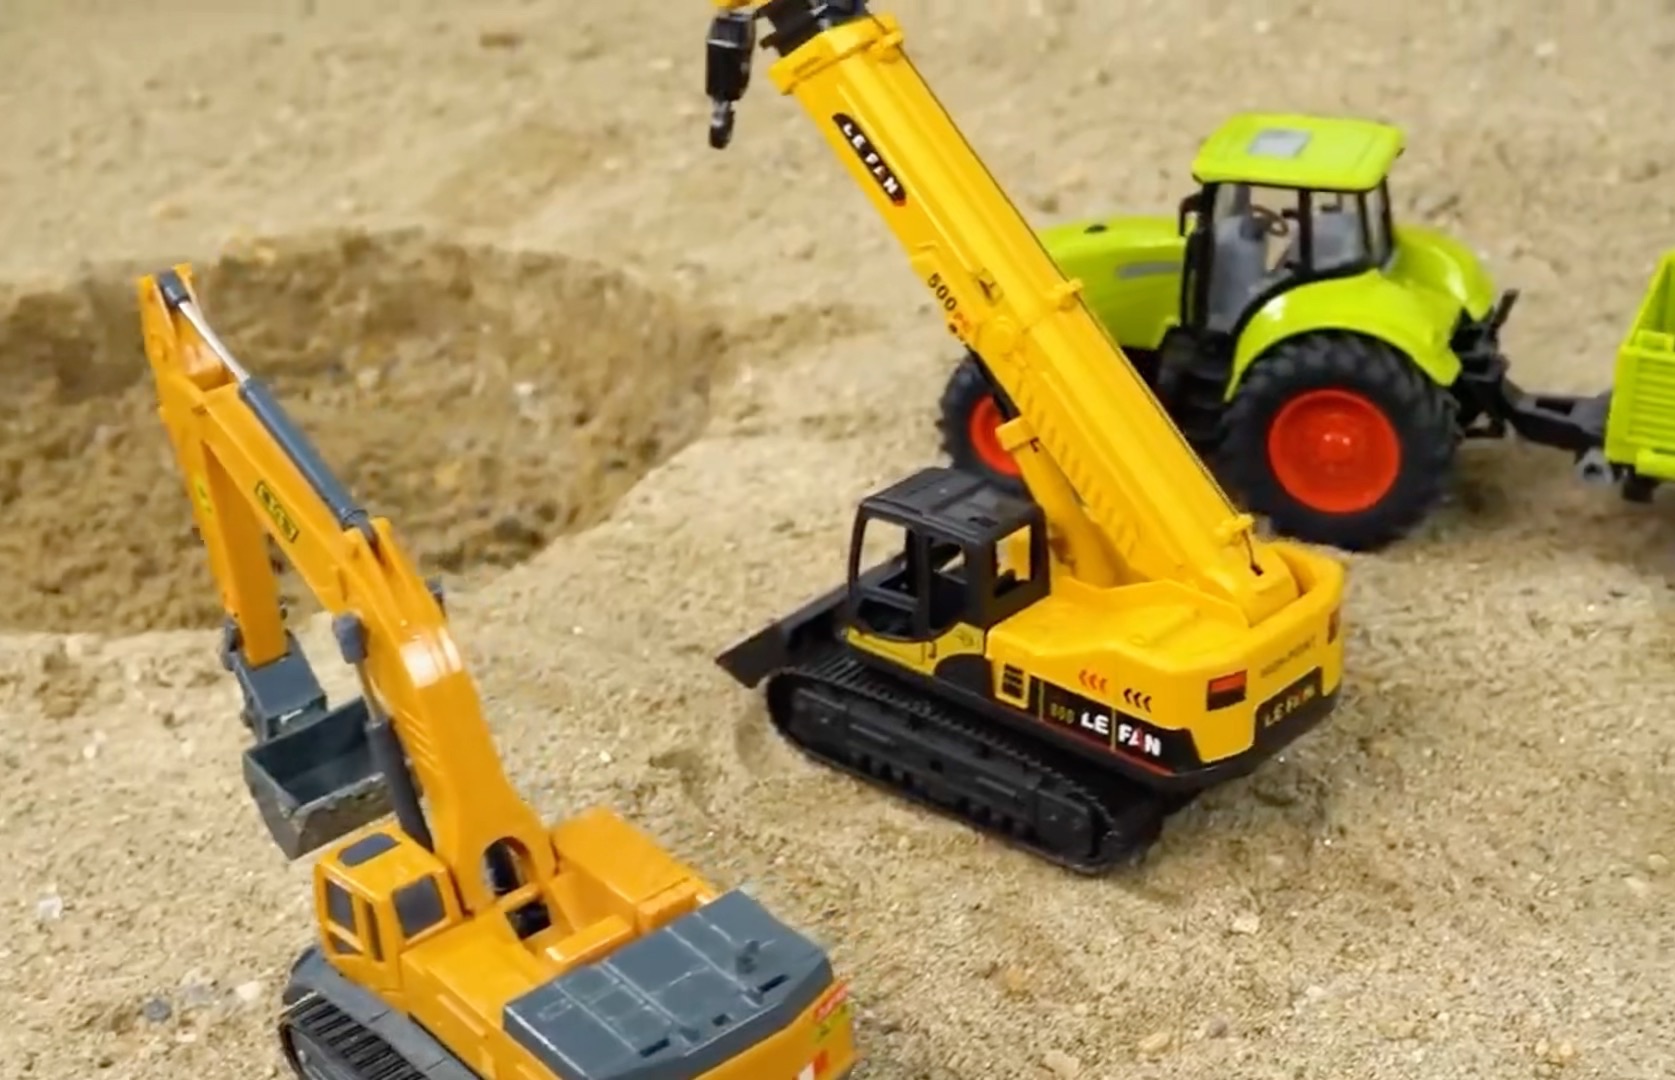 暴雨过后地面出现流沙陷阱，大脚怪兽车陷入被挖掘机和拖车救出 #儿童动画 #工程车动画 #汽车动画 #游戏日常